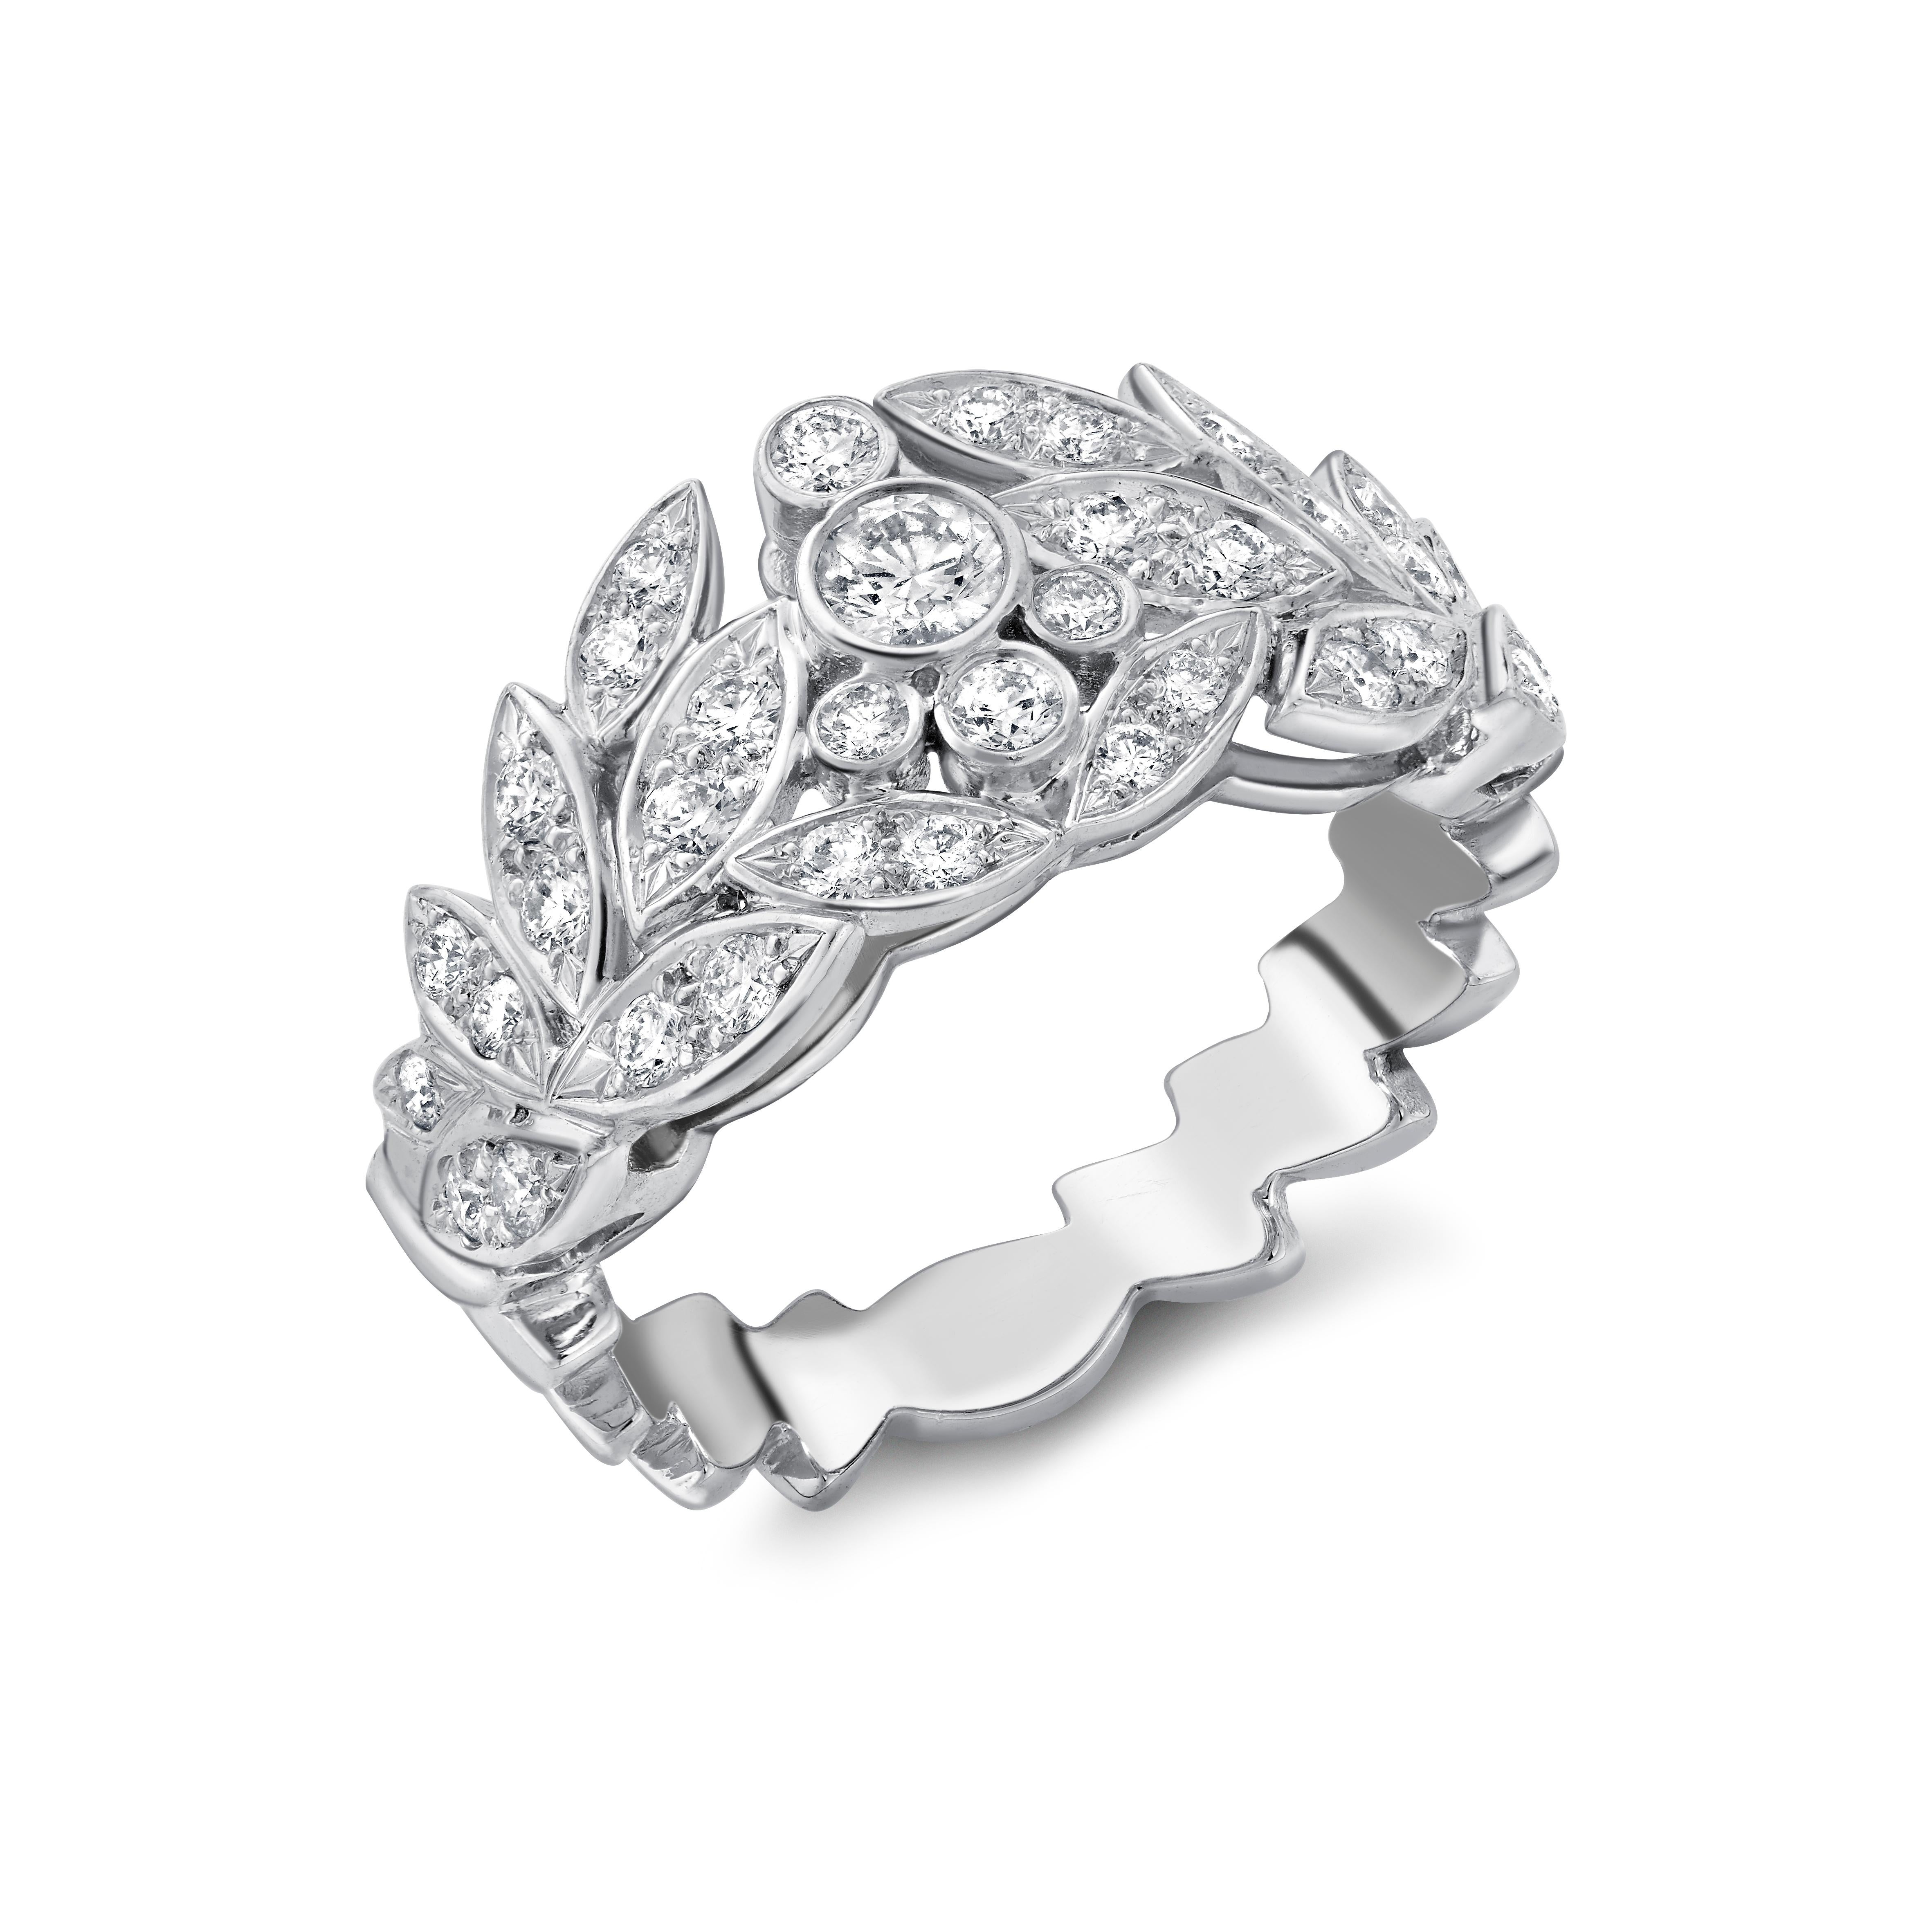 E Wolfe & Company Diamantbesetzter Ring aus Platin. Die runden Diamanten im Brillantschliff haben ein Gesamtgewicht von 0,64 Karat und sind von Farbe G und Reinheit VS. Der Ring wurde im Jahr 2021 in unserer Londoner Werkstatt handgefertigt und